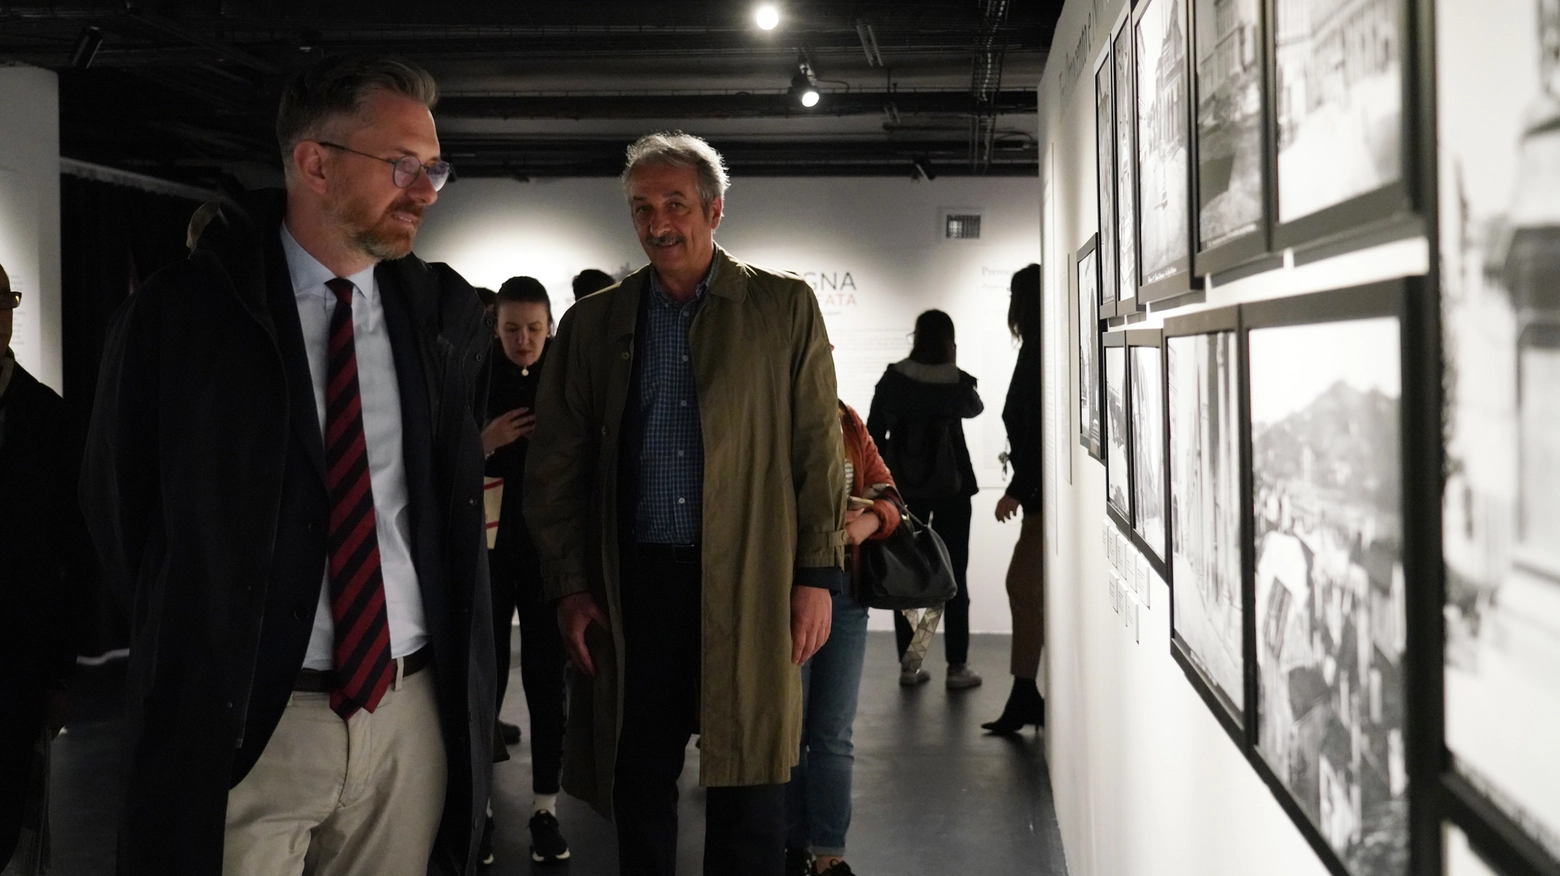 Il sindaco Lepore all'anteprima della mostra "Bologna fotografata. Persone, luoghi, fotografi" (foto Schicchi)